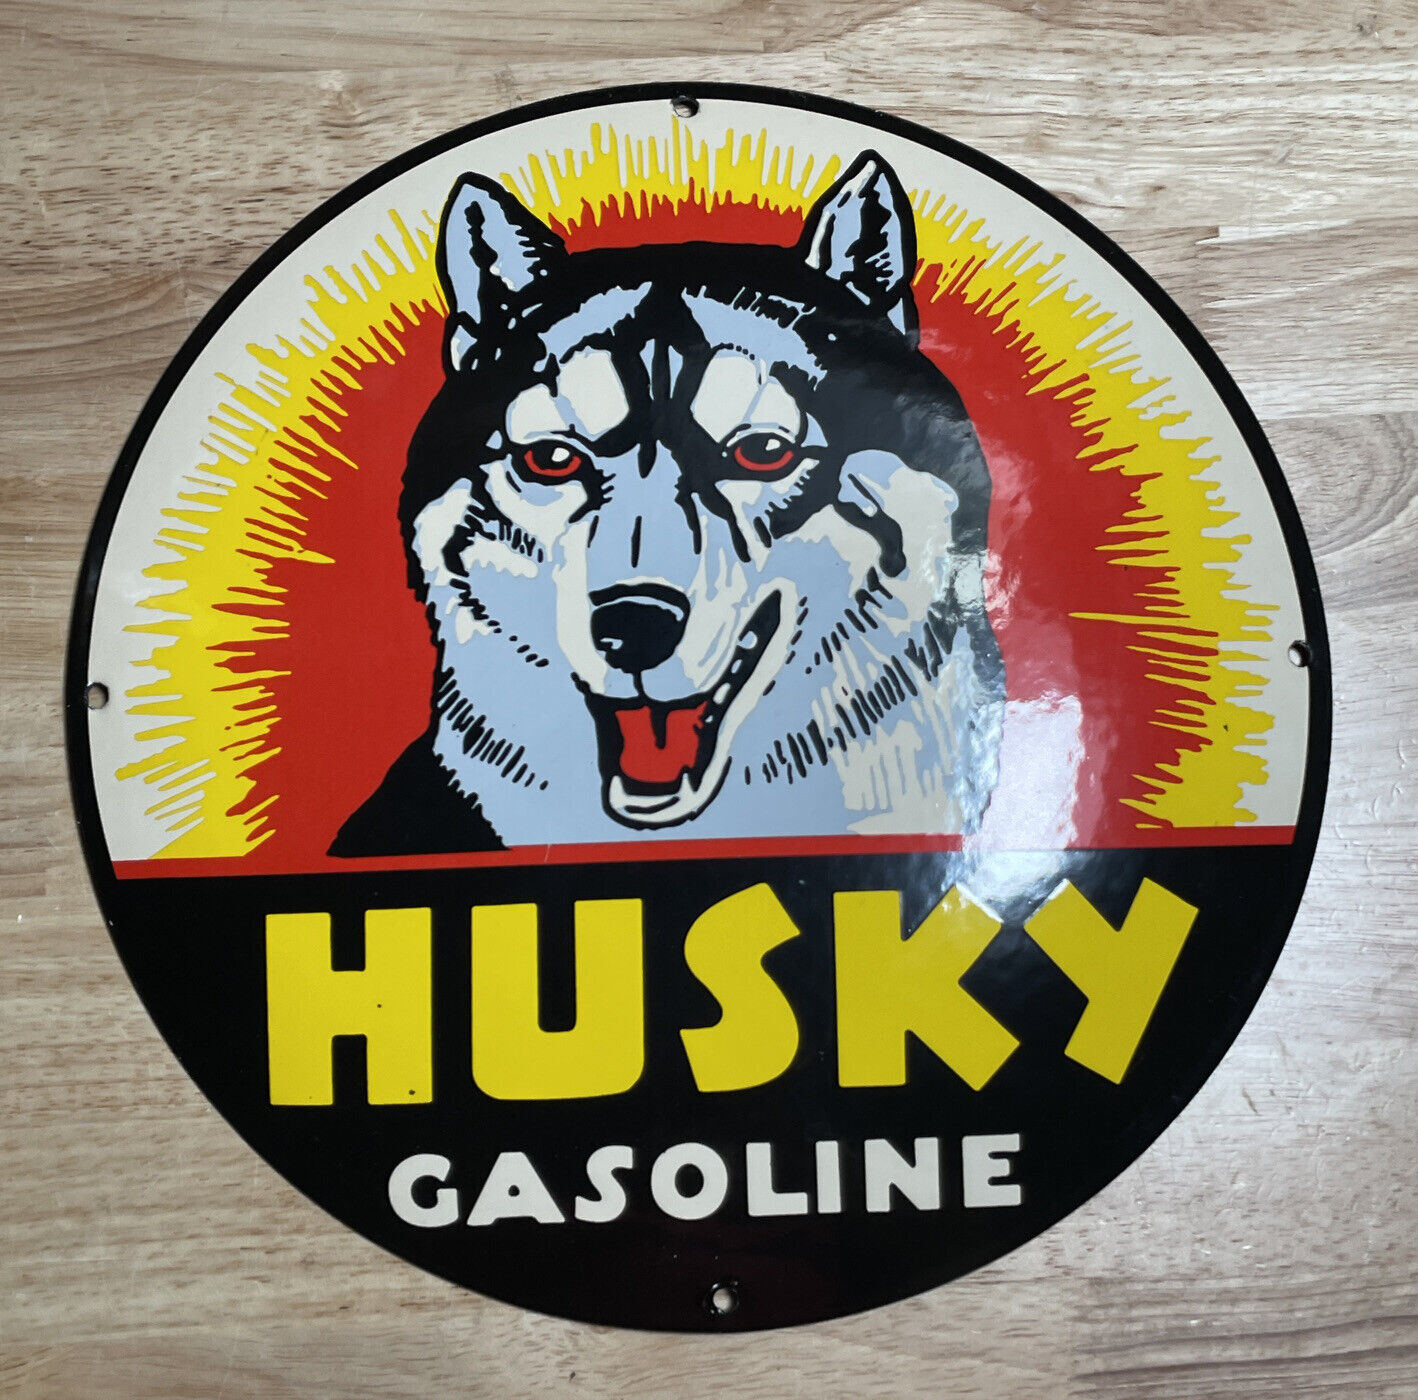 HUSKY GASOLINE PORCELAIN SIGN K-9 GAS STATION CONVEX PUMP PLATE OIL DOG 12” DIA.